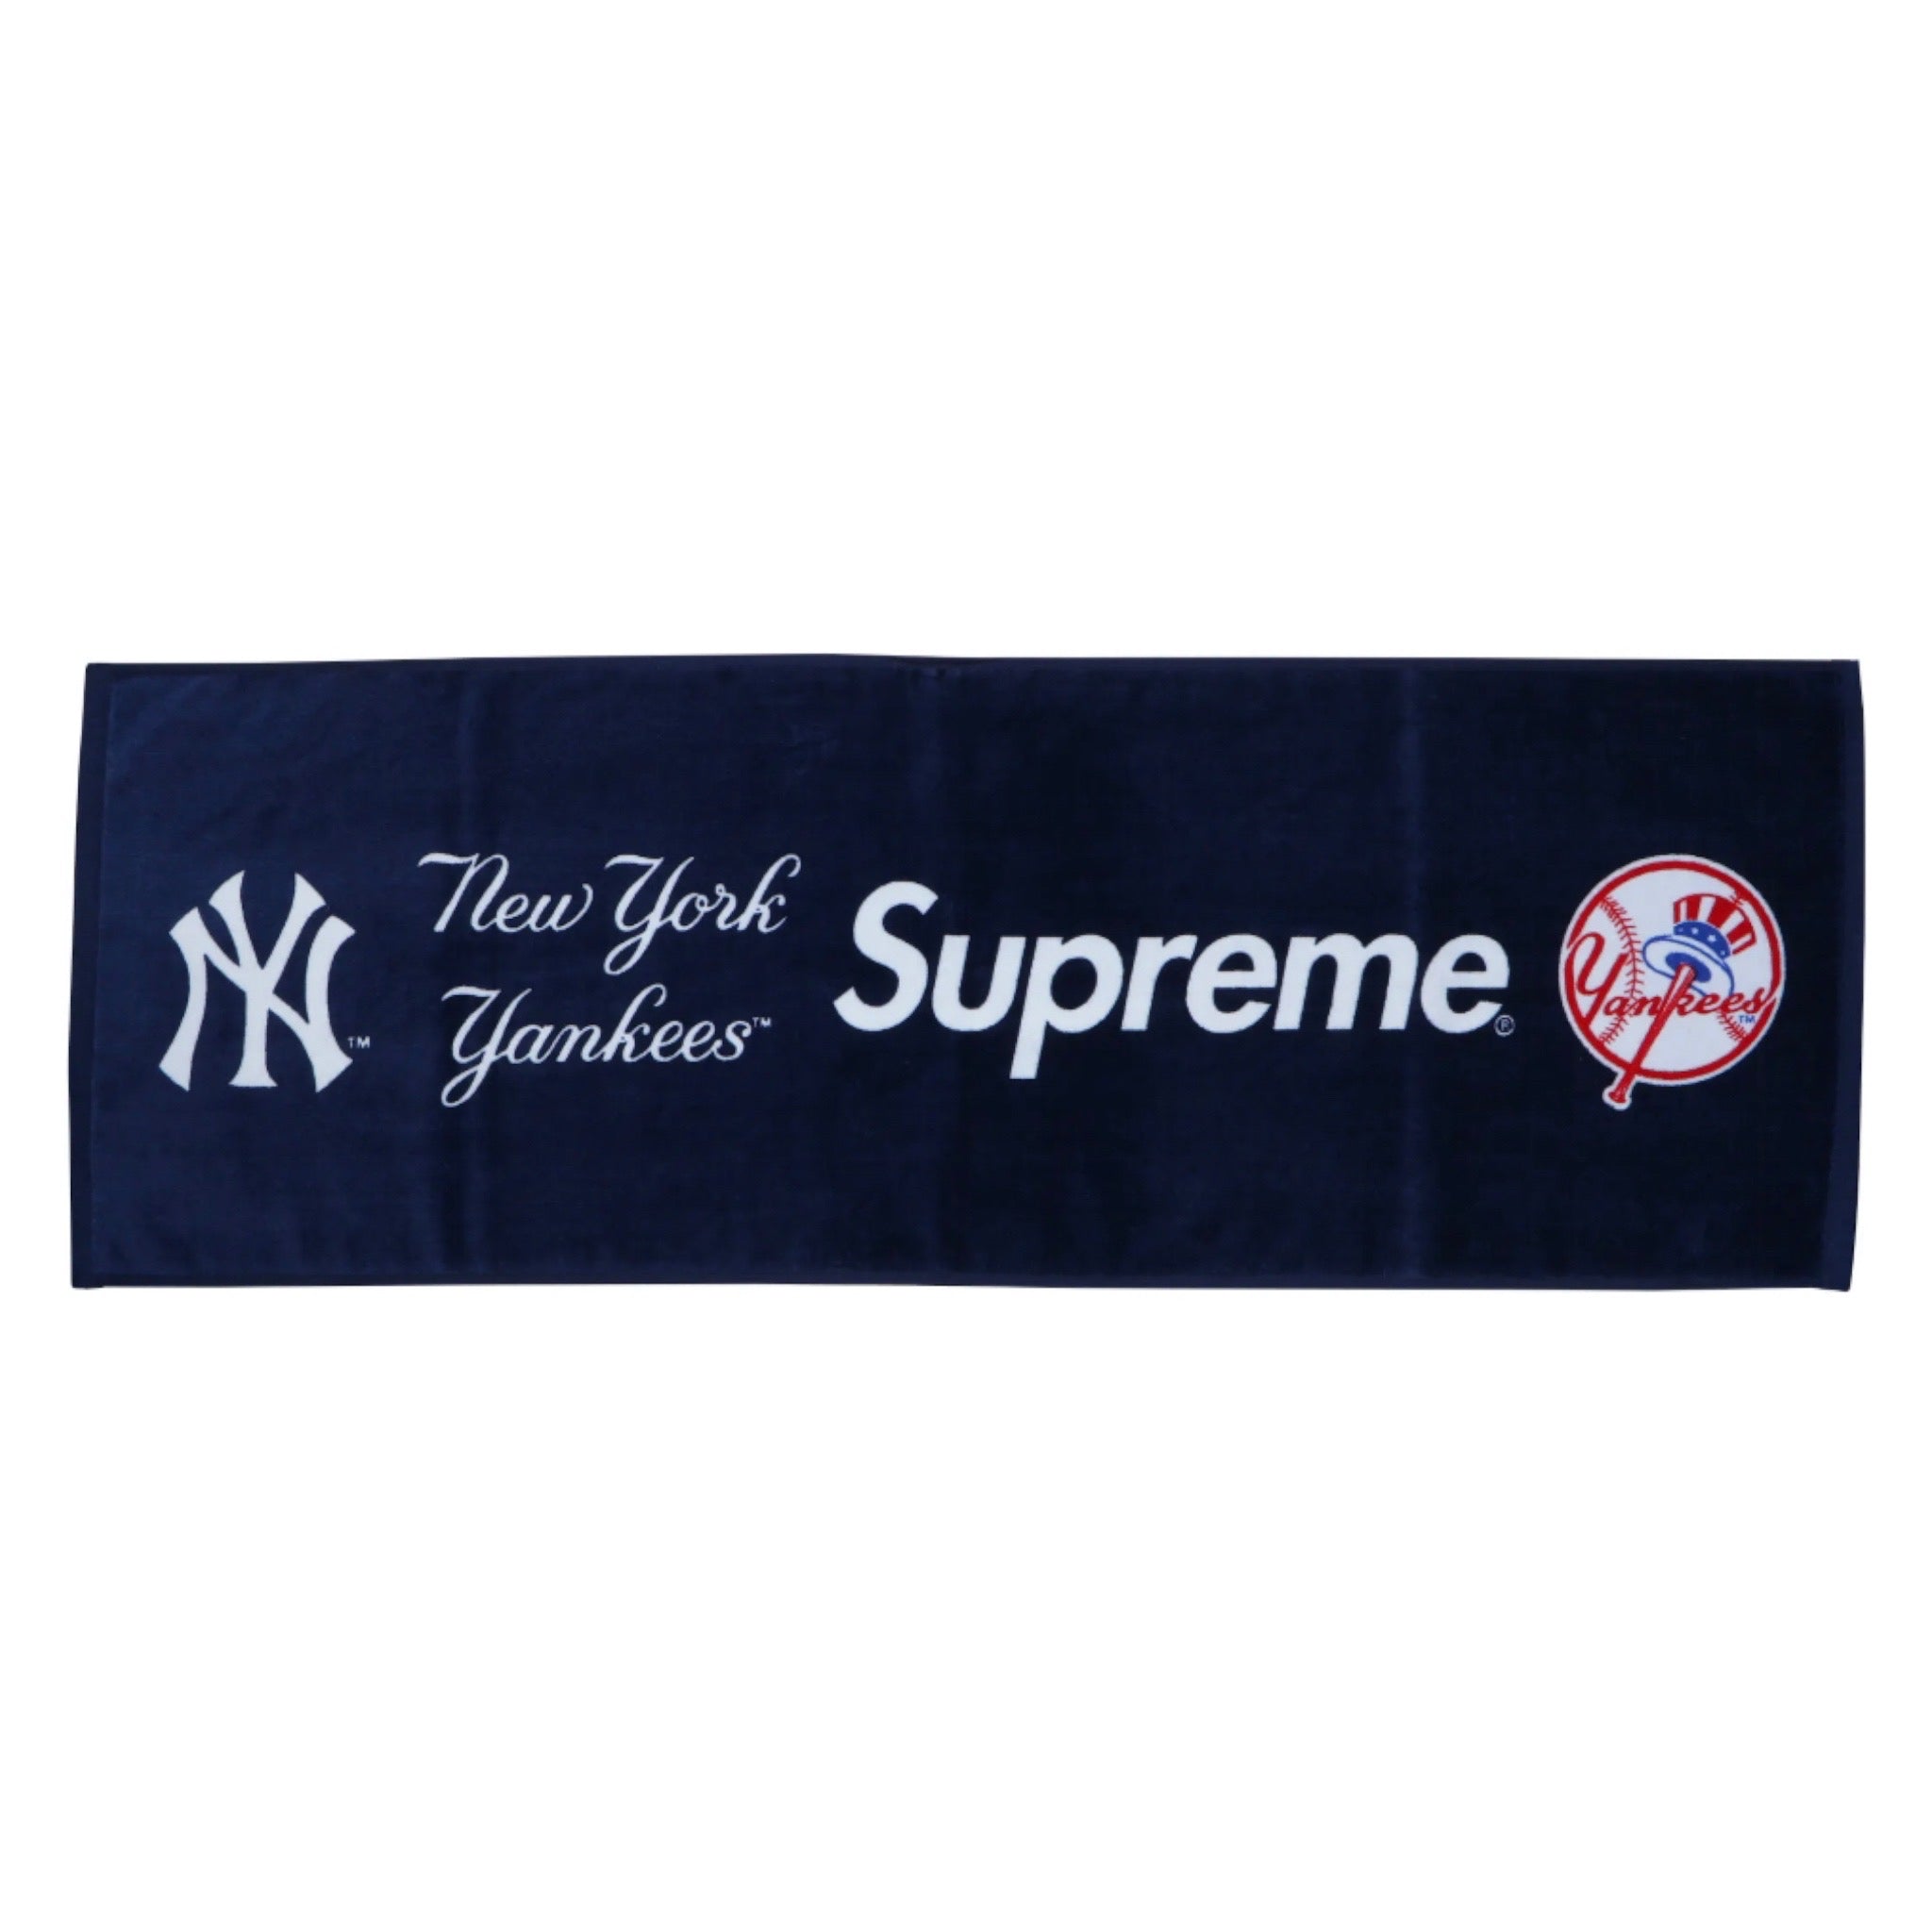 Supreme x New York Yankees Towel